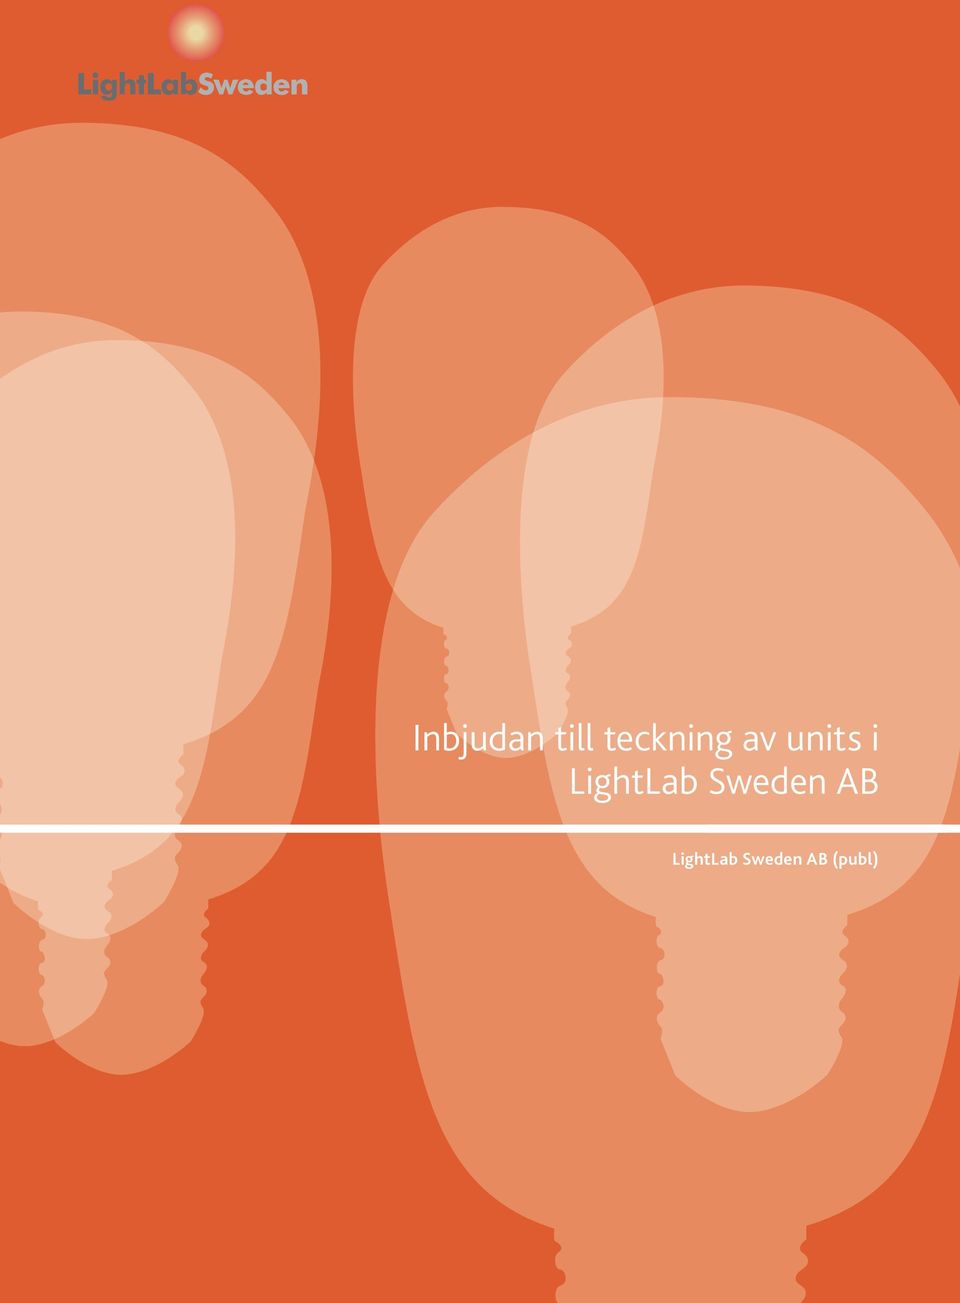 LightLab Sweden AB